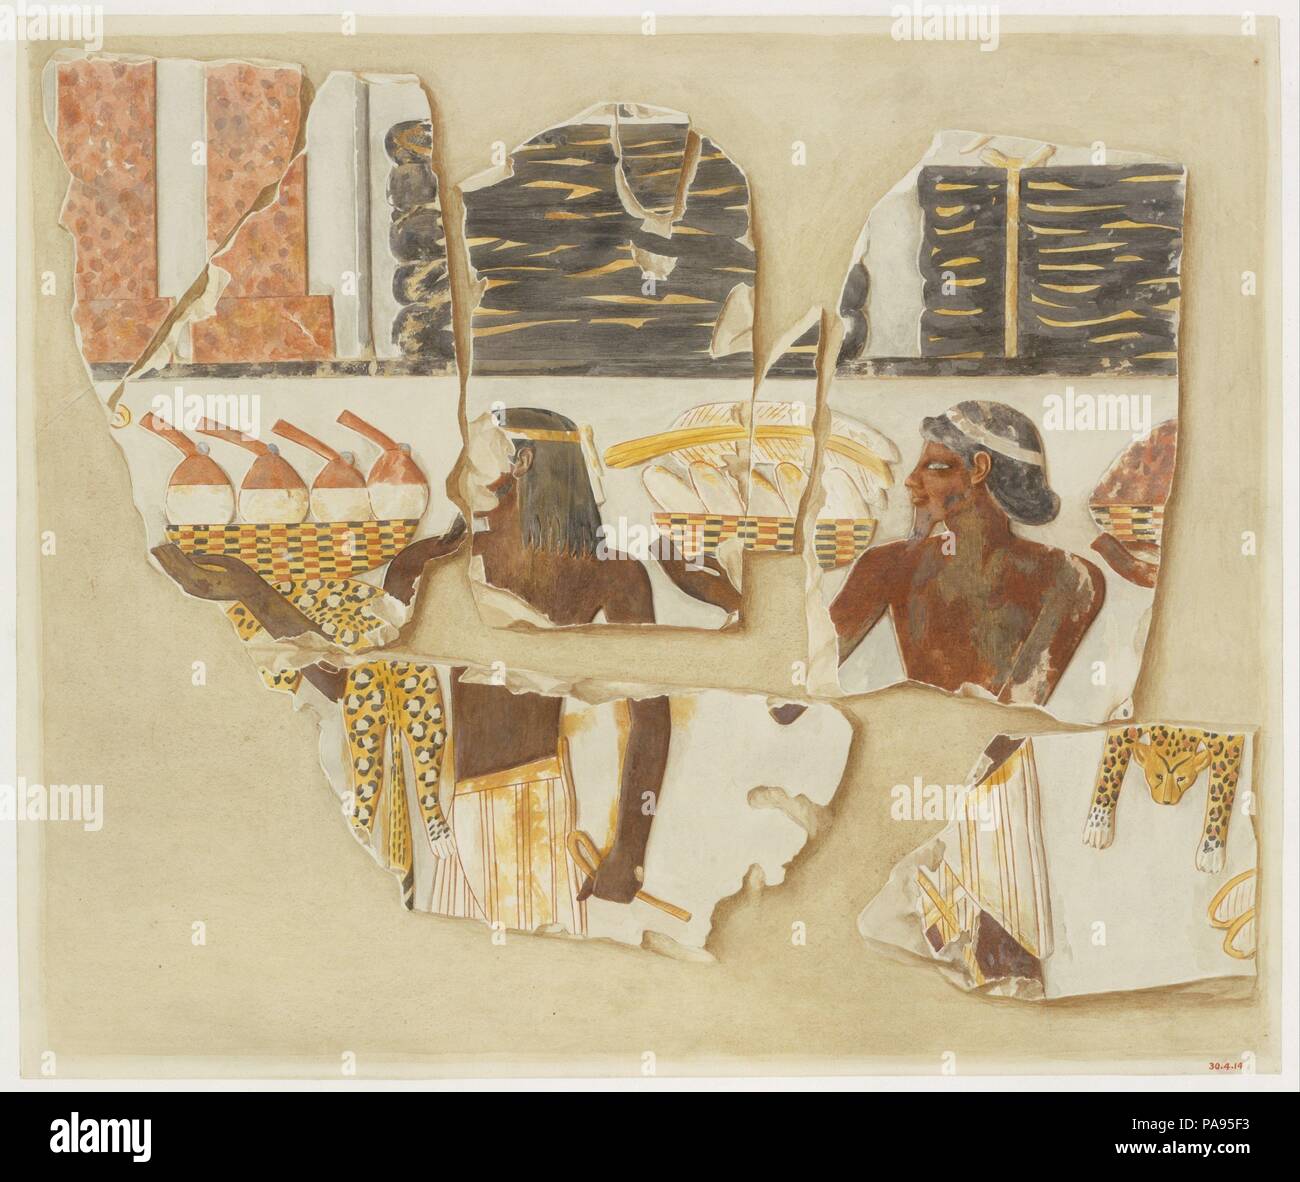 Asiaten Geschenke bringen aus dem Osten, Grab von Puyemre. Artist: Hugh R. Hopgood. Abmessungen: Fax: H. 42,8 × W 50,9 cm (16 7/8 x 20 1/8 in.); gerahmt: H. 44,5 × W 52,4 cm (17 1/2 x 20 5/8 in.); Maßstab. 1:1. Dynastie: Dynasty 18. Herrschaft: gemeinsame Herrschaft von Hatschepsut und Thutmosis III. Datum: Ca. 1479-1458 v. Chr.. Museum: Metropolitan Museum of Art, New York, USA. Stockfoto